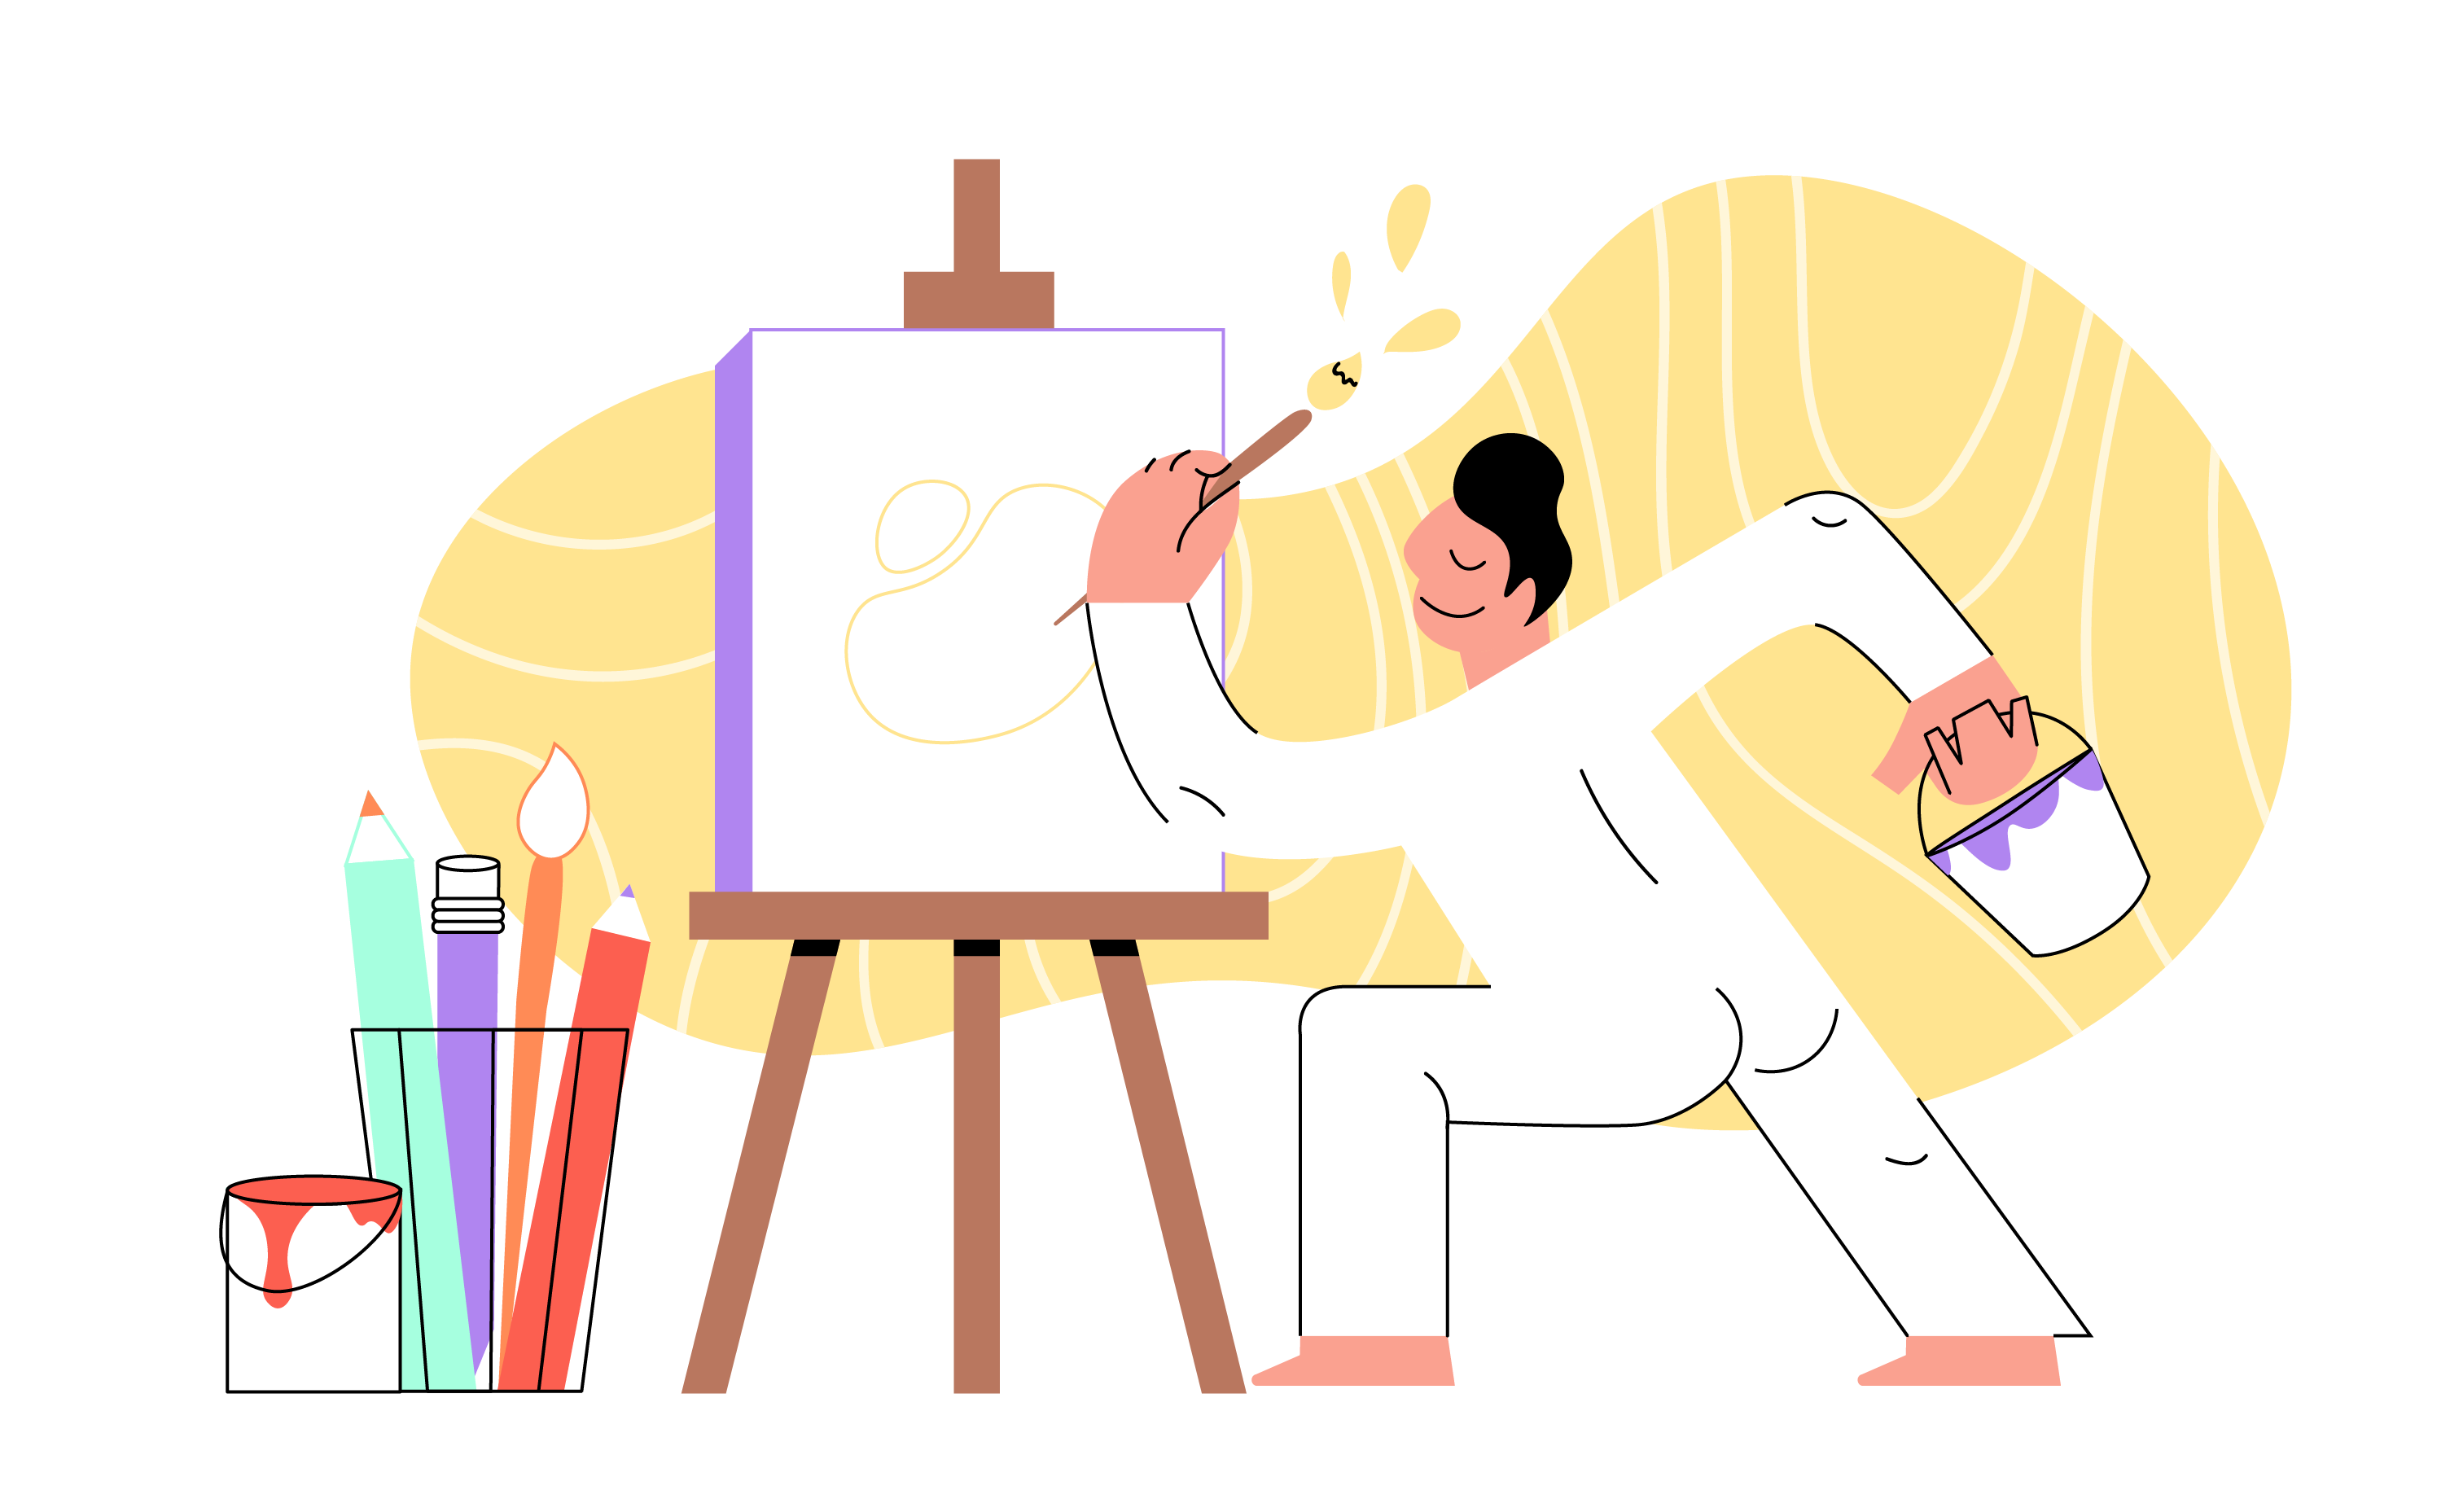 Vẽ minh họa là gì  top 4 mẫu thiết kế minh họa ấn tượng đừng nhầm lẫn giữa  illustration và graphic design